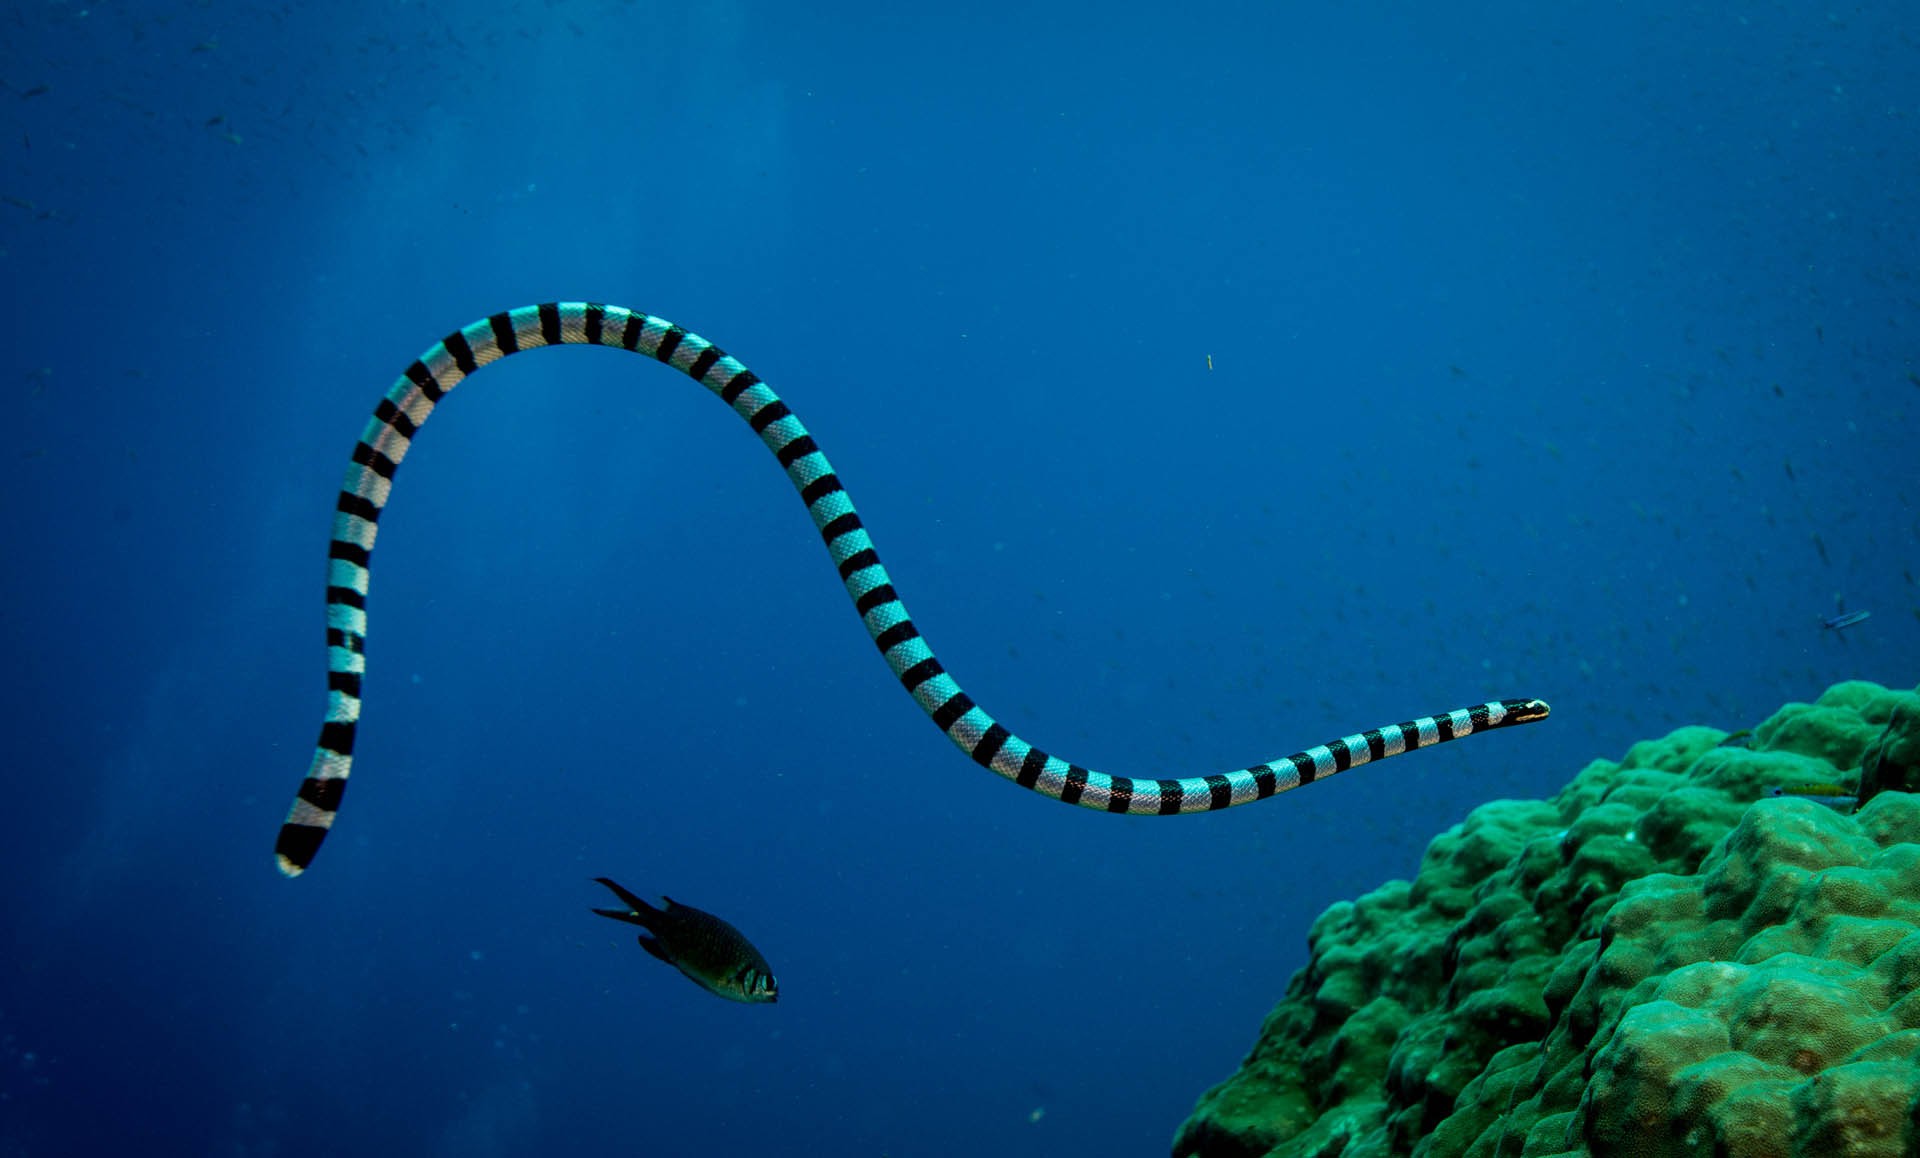 Змеи красного моря фото и названия